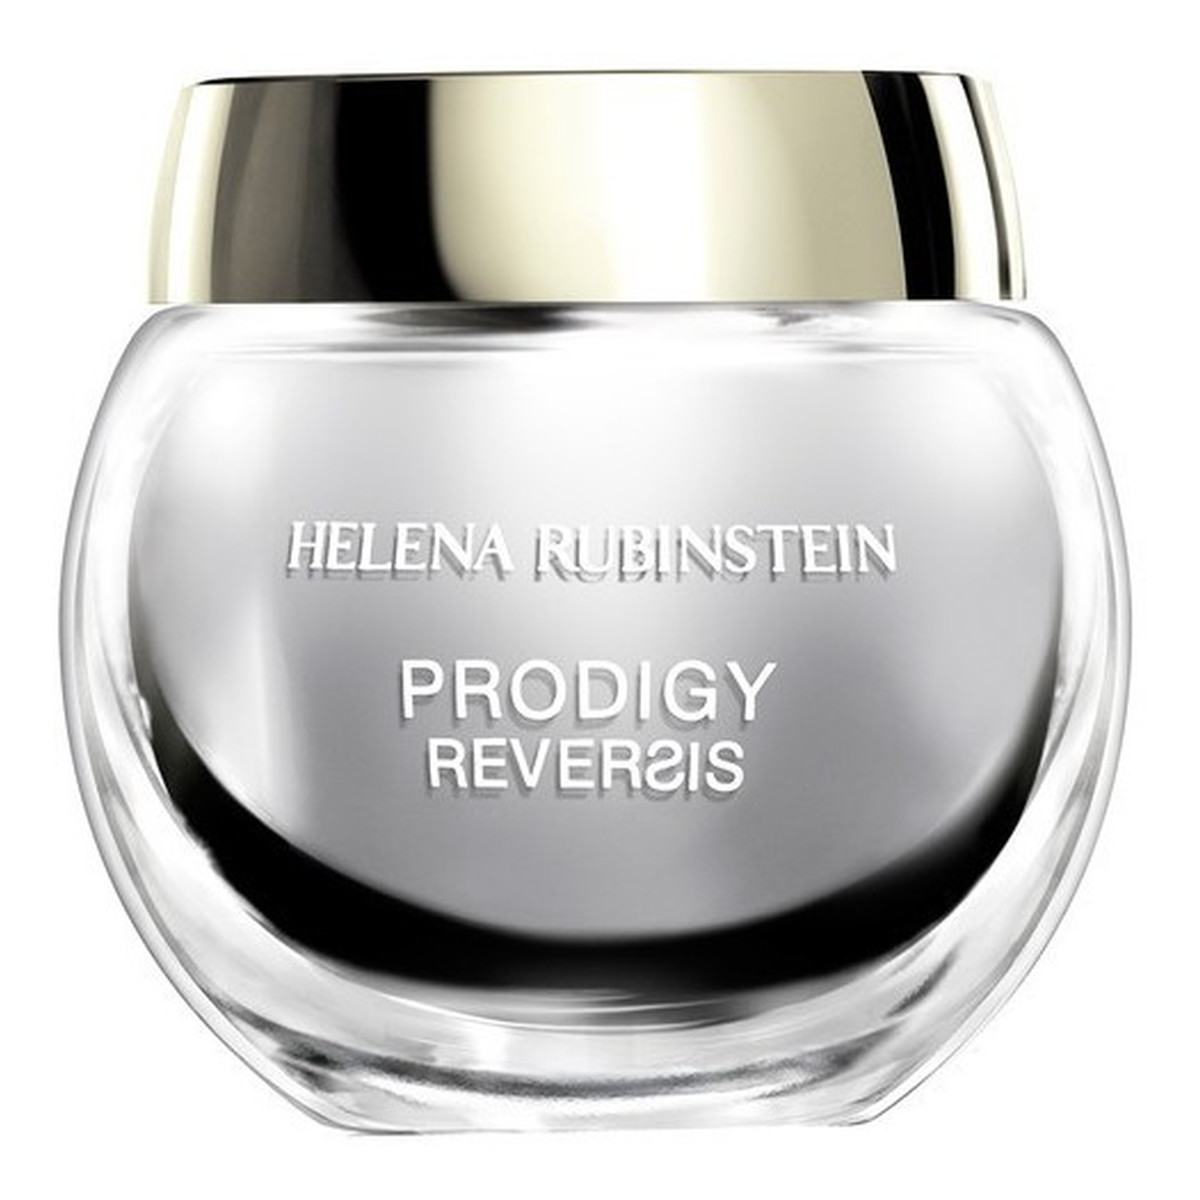 Helena Rubinstein Prodigy Reversis Odżywczy krem przeciwzmarszczkowy dla skóry suchej i normalnej 50ml